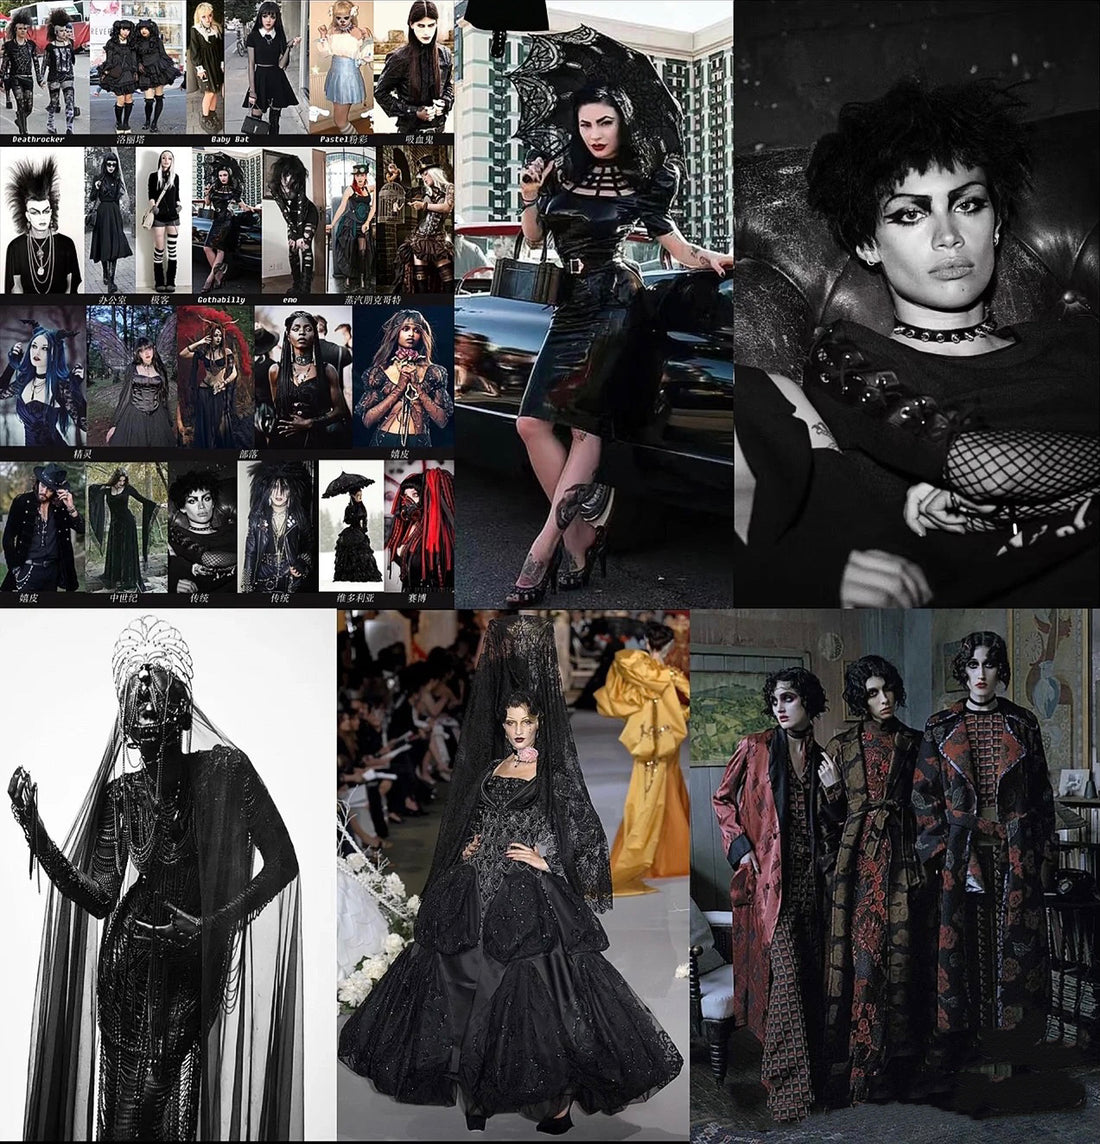 Goth Culture: A Dark and Beautiful Subculture